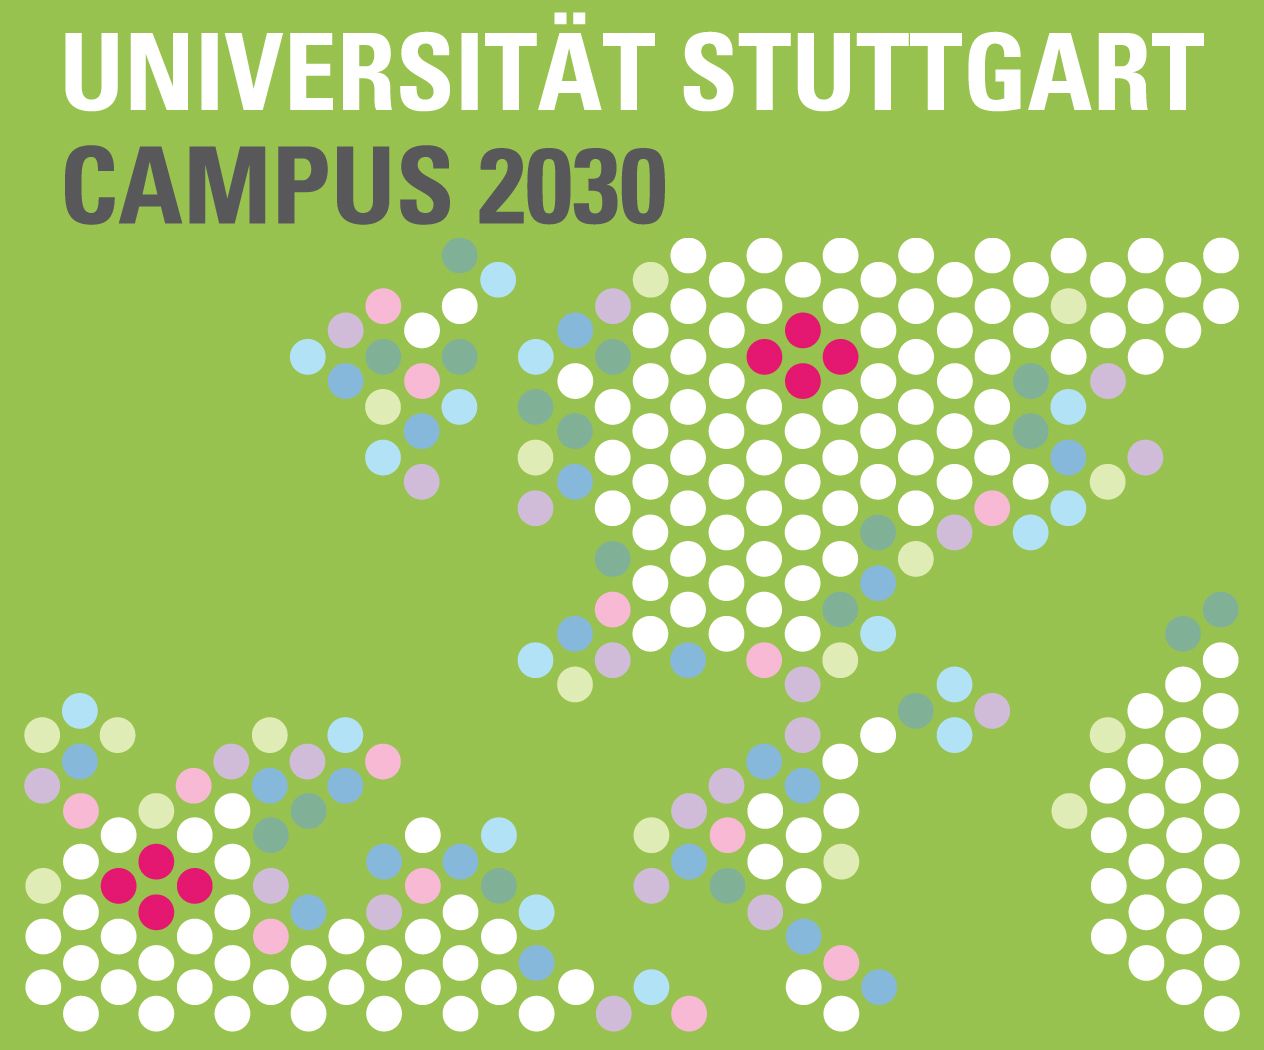 Campus 2030 - Symposium „Stadtentwicklung und Hochschulen“ an der Universität Stuttgart